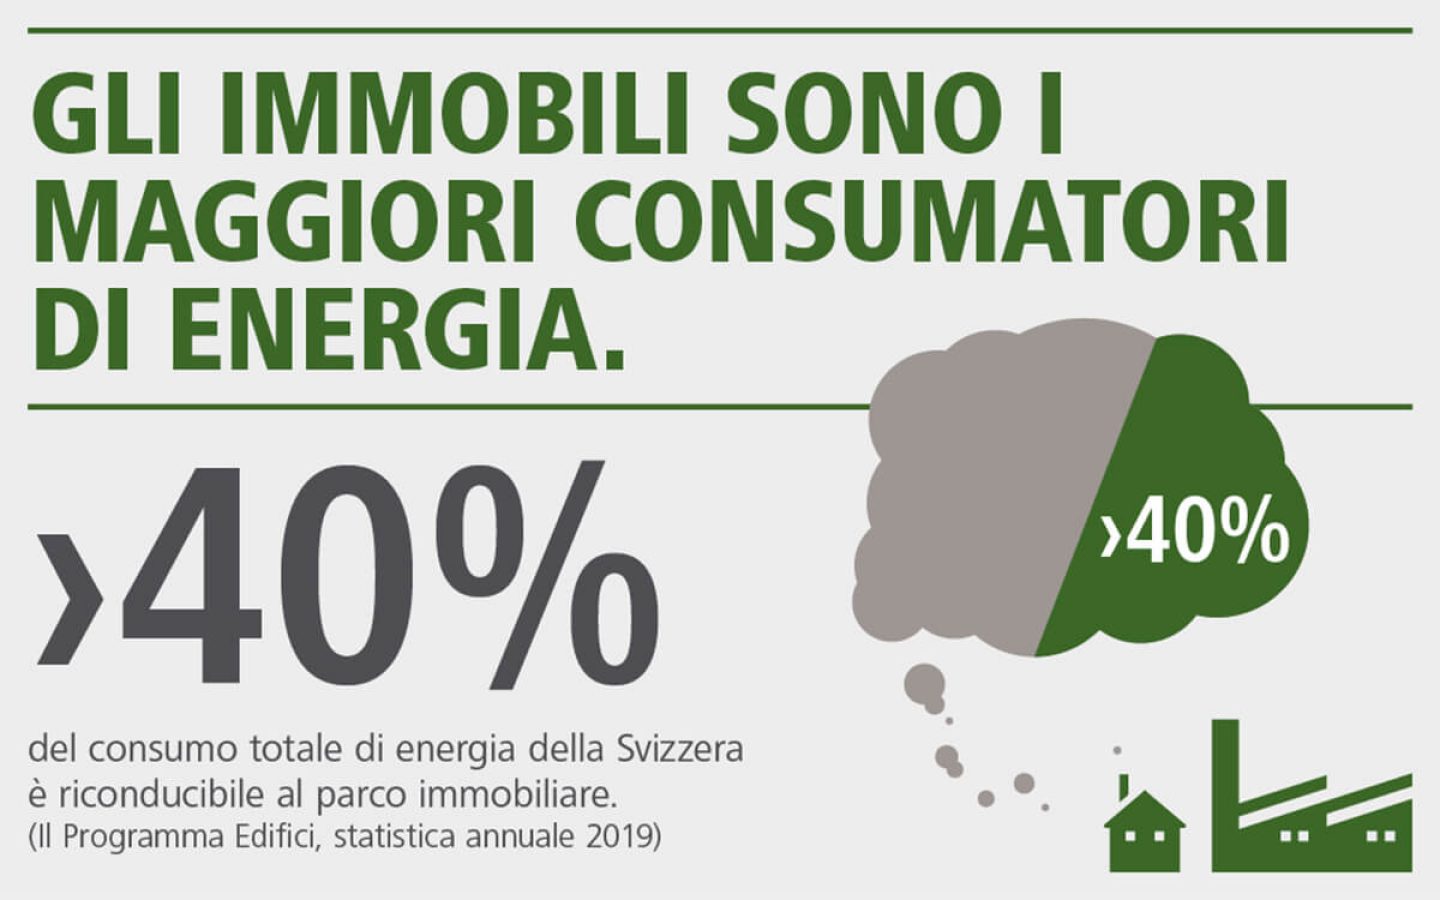 Infografica: oltre il 40% del consumo energetico totale in Svizzera è riconducibile agli immobili.